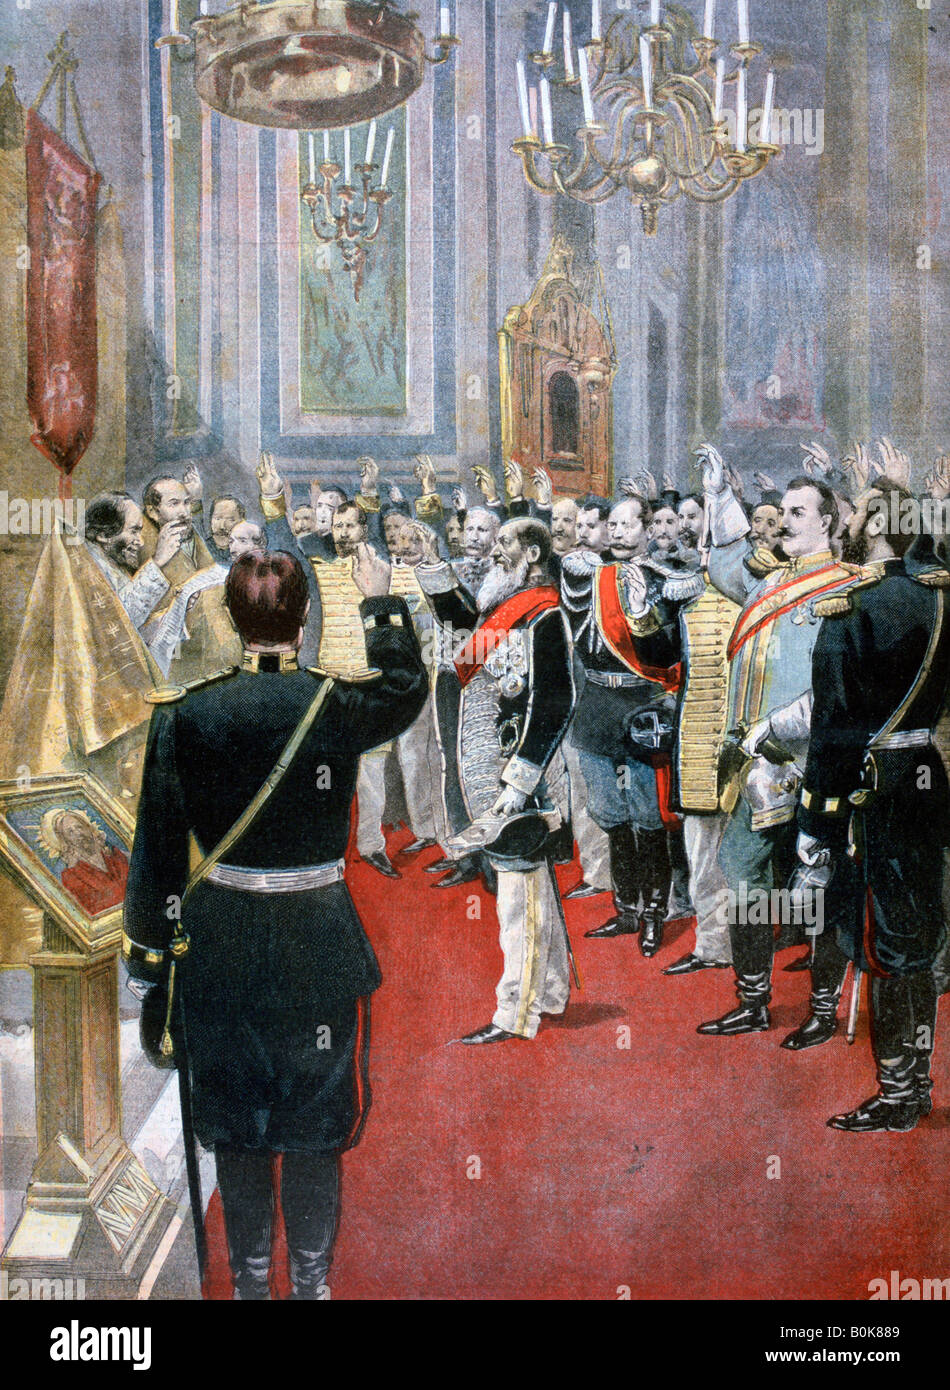 Il giuramento di fedeltà al Tsar Nicholas II, chiesa russa a Parigi, 1894. Artista: F Meaulle Foto Stock